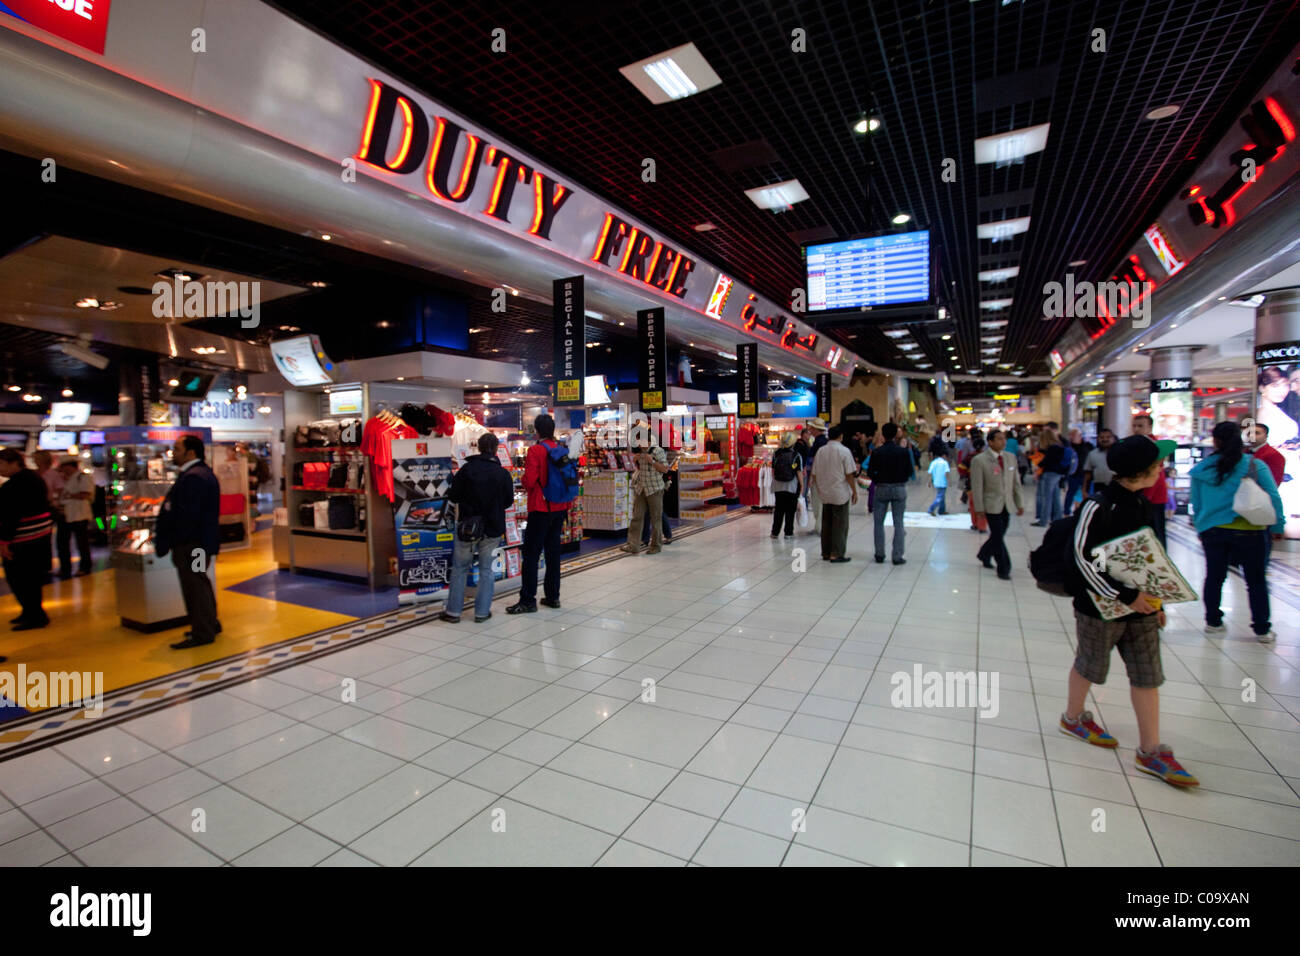 Duty Free, Aeroporto Internazionale, sala partenze, capitale Manama, Regno del Bahrein, Golfo Persico Foto Stock